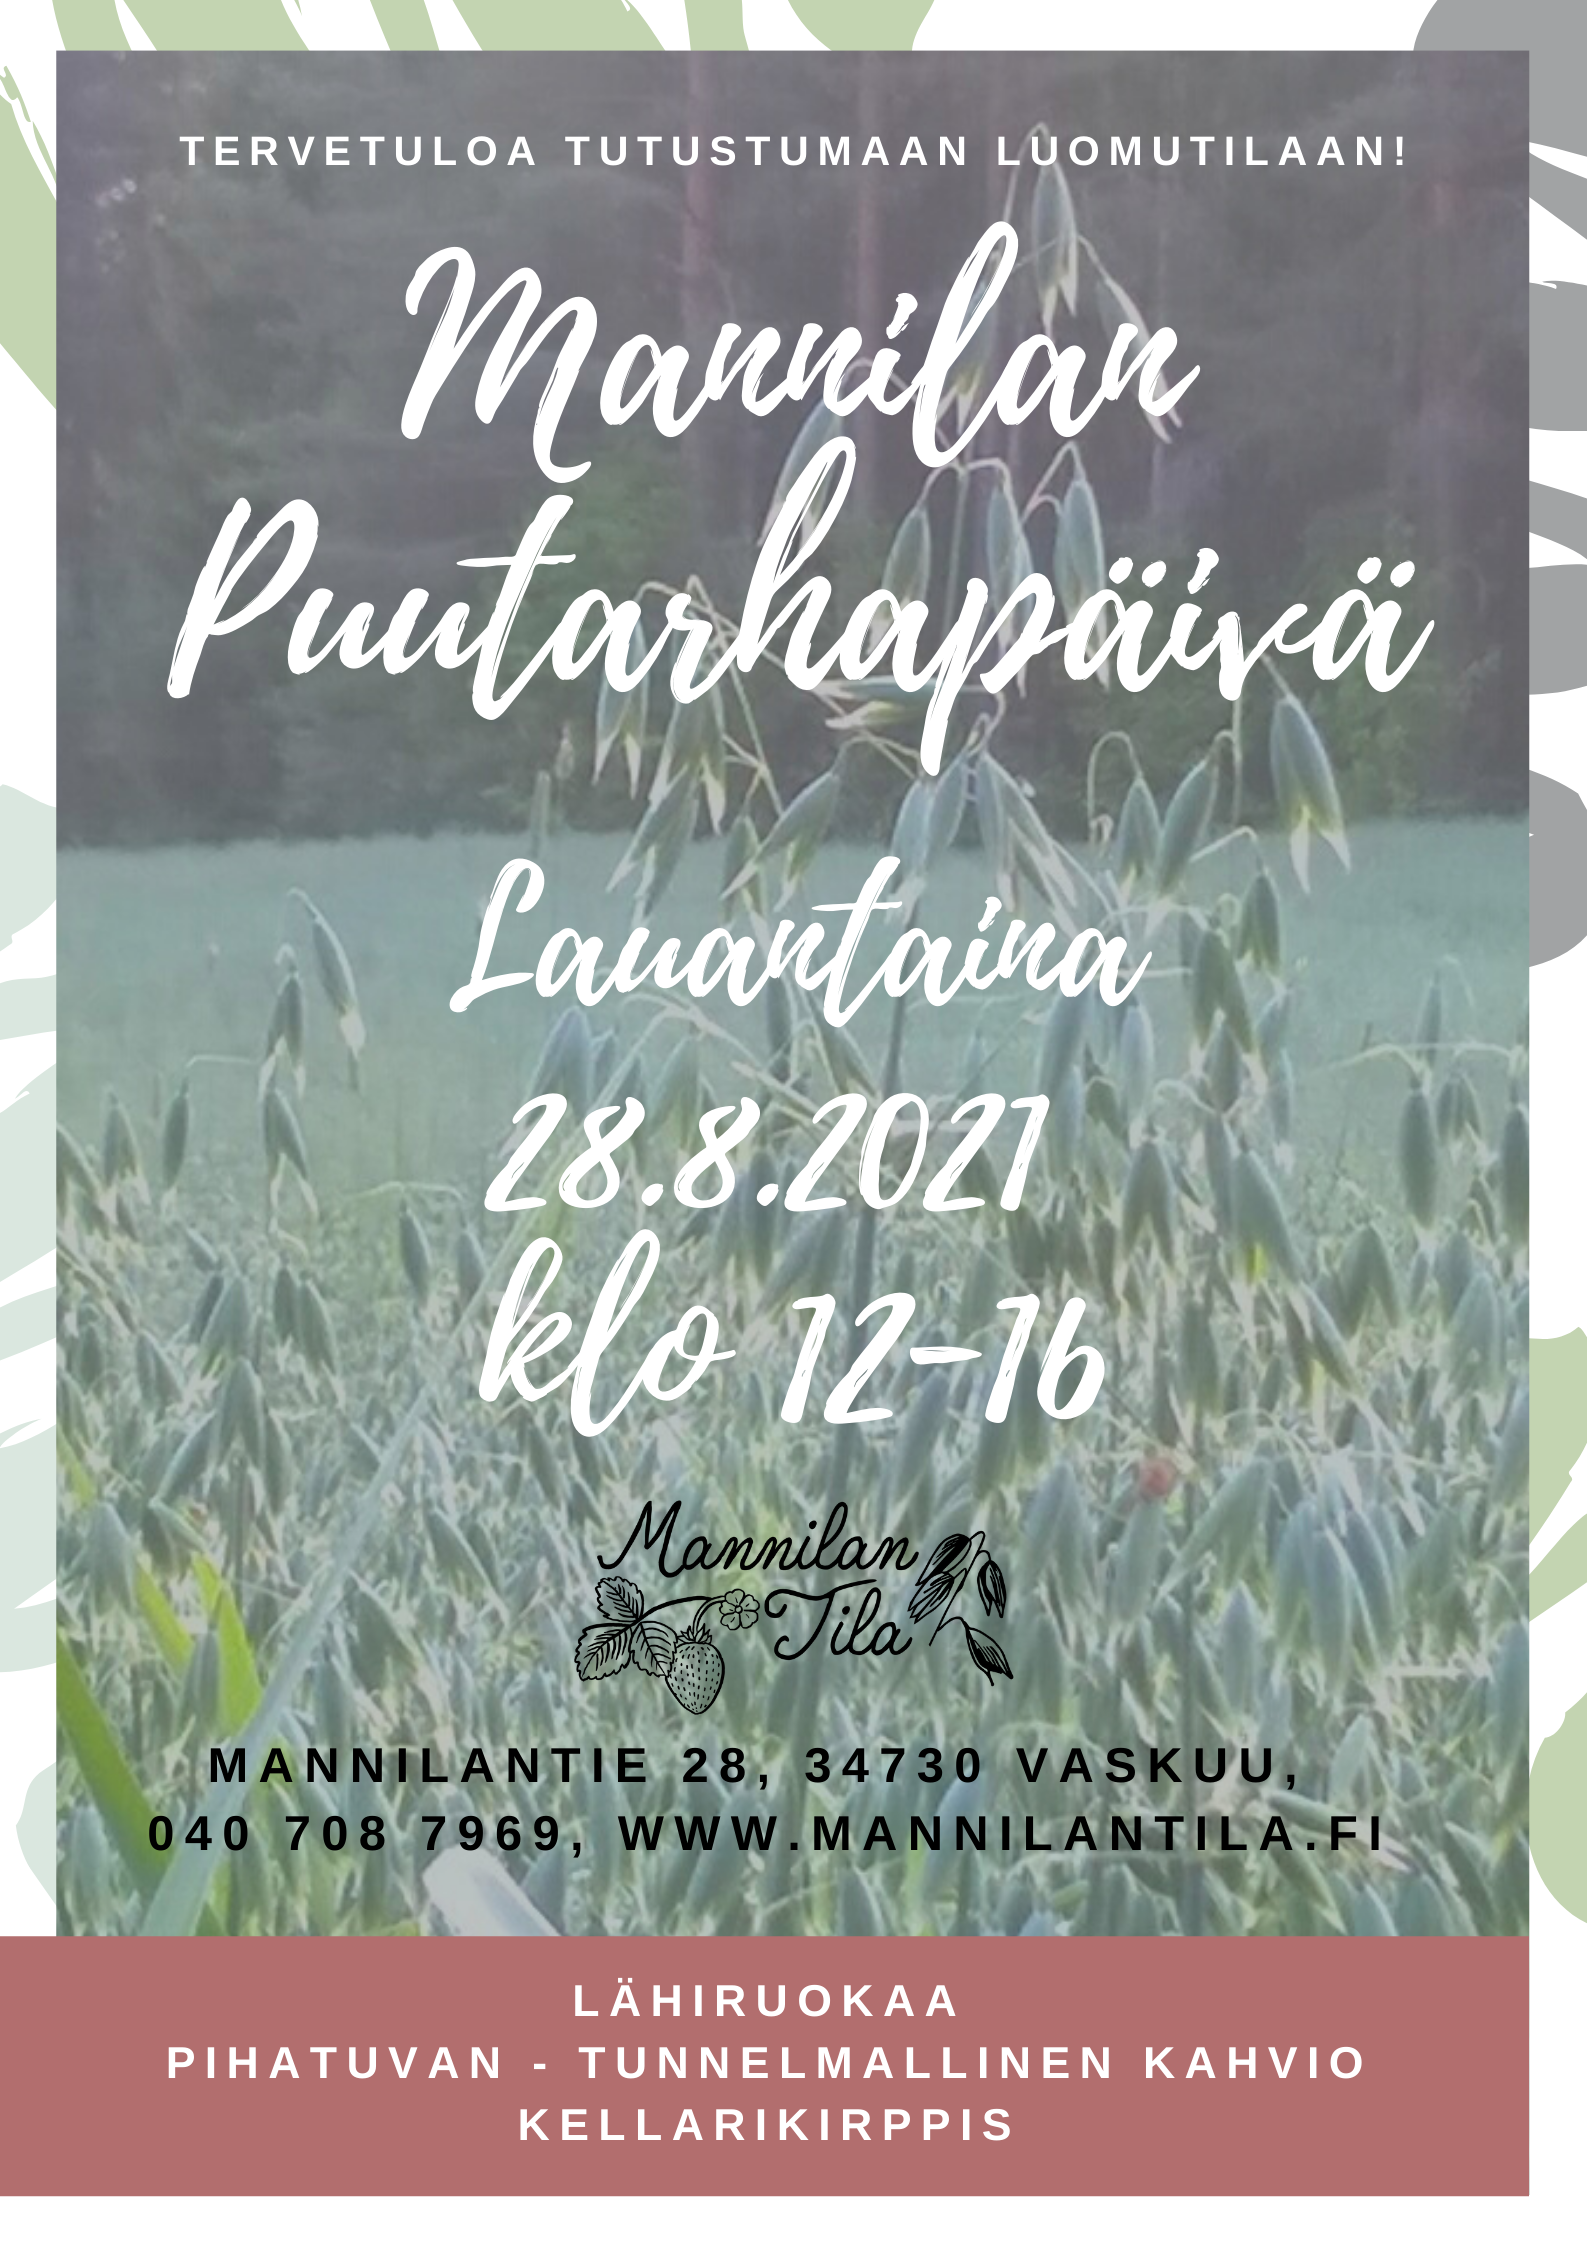 Mannilan puutarhapäivä 28.8.2021 klo 12-16 Mannilan tilalla, Mannilantie 28 Vaskuu. Lähiruokaa, pihatuvan tunnelmallinen kahvio ja kellarikirppis.